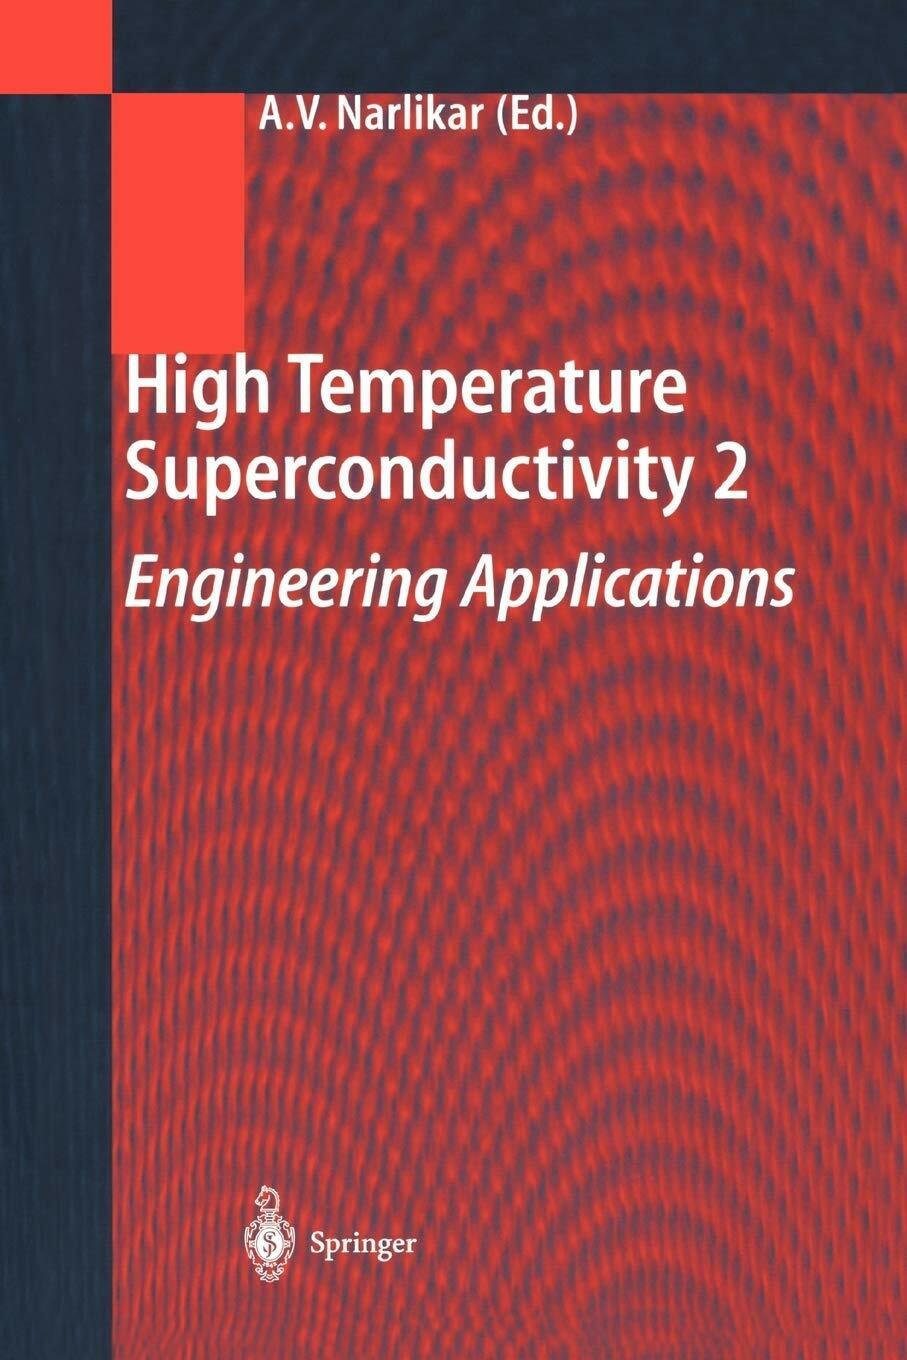 High Temperature Superconductivity 2 - Anant V. Narlikar - Springer, 2013